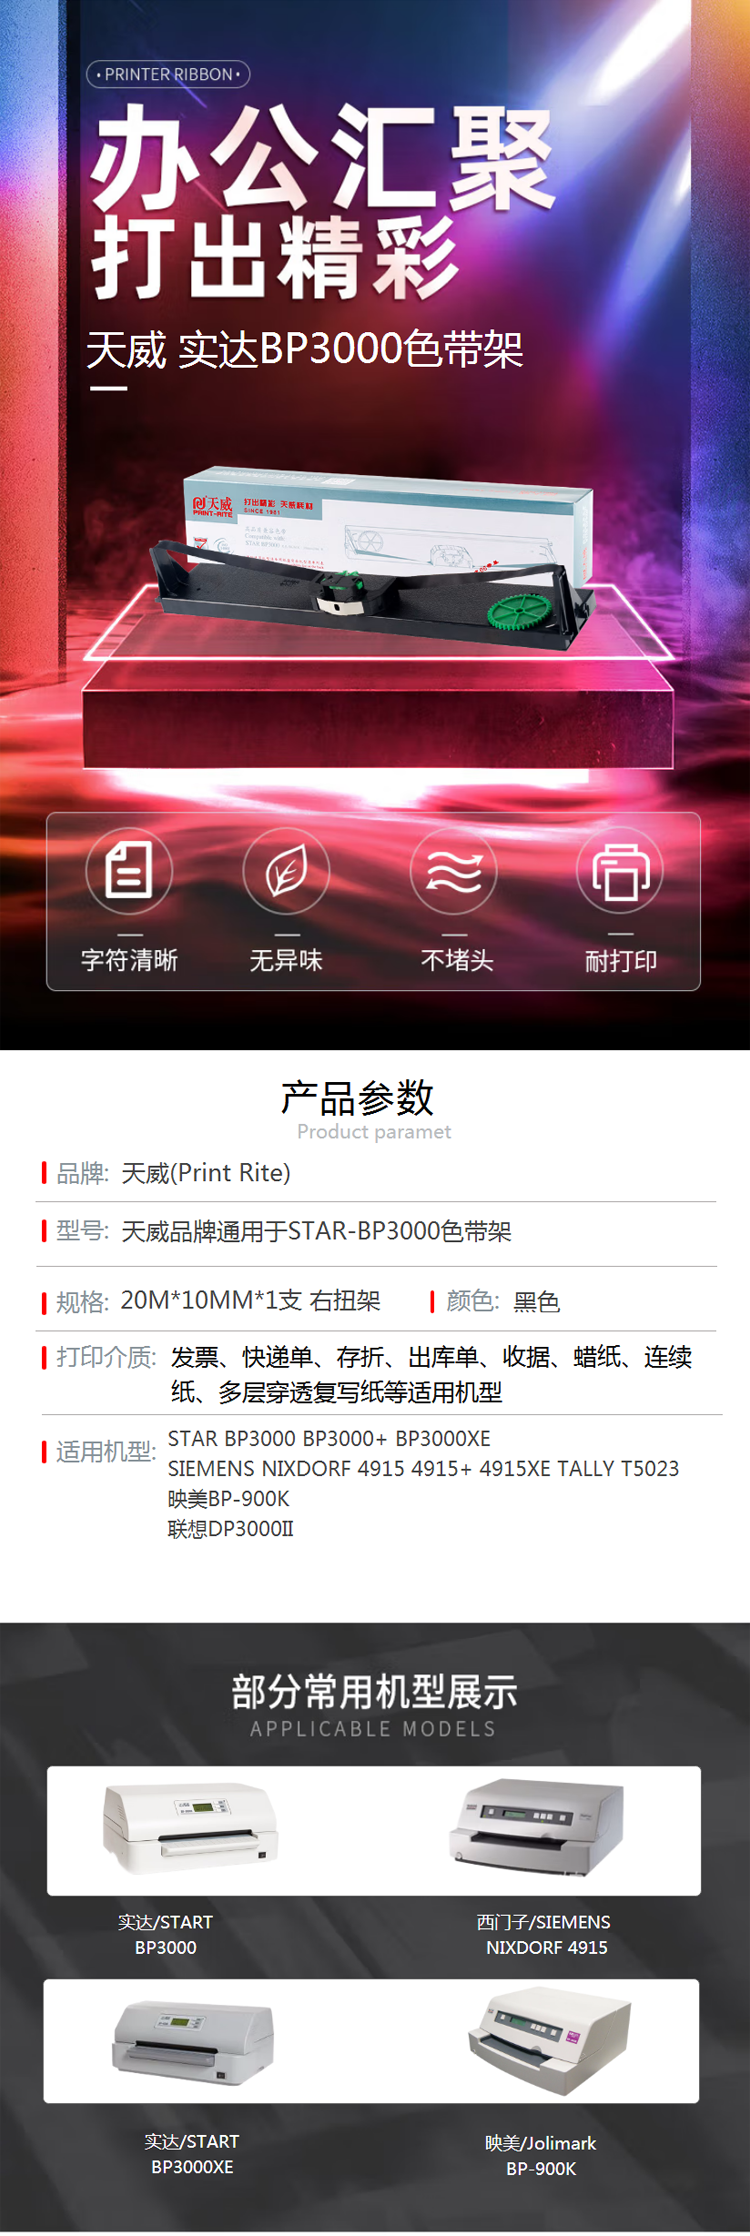 【天威BP3000】天威 BP3000 色带架适用实达STAR BP3000+ BP3000XESI.png